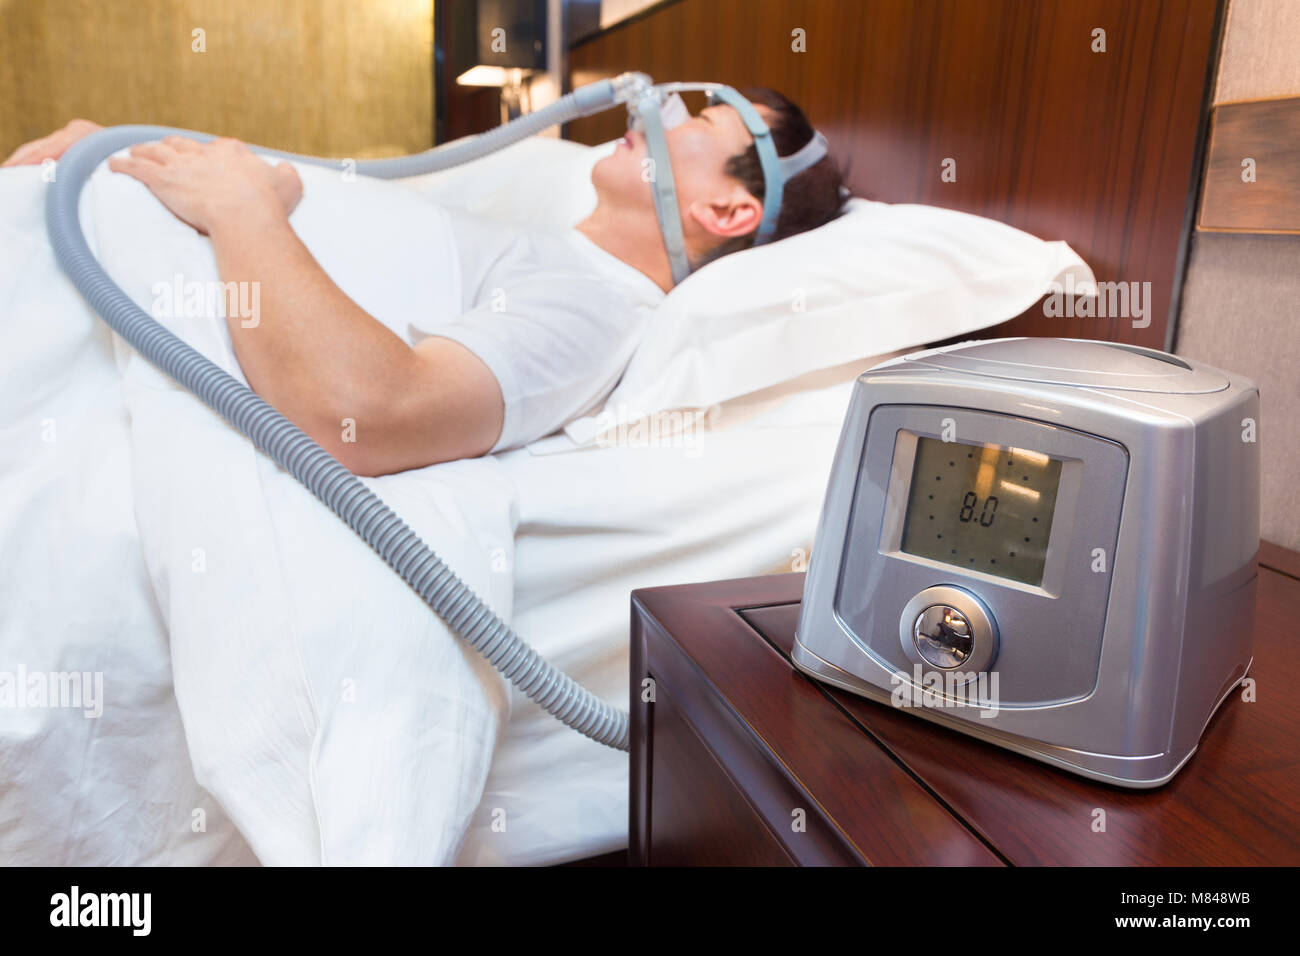 Hombre Usando La Máquina De CPAP Y Máscara El Dormir Para El Tratamiento  Del Sueño Foto de archivo - Imagen de salud, obstructor: 129757542